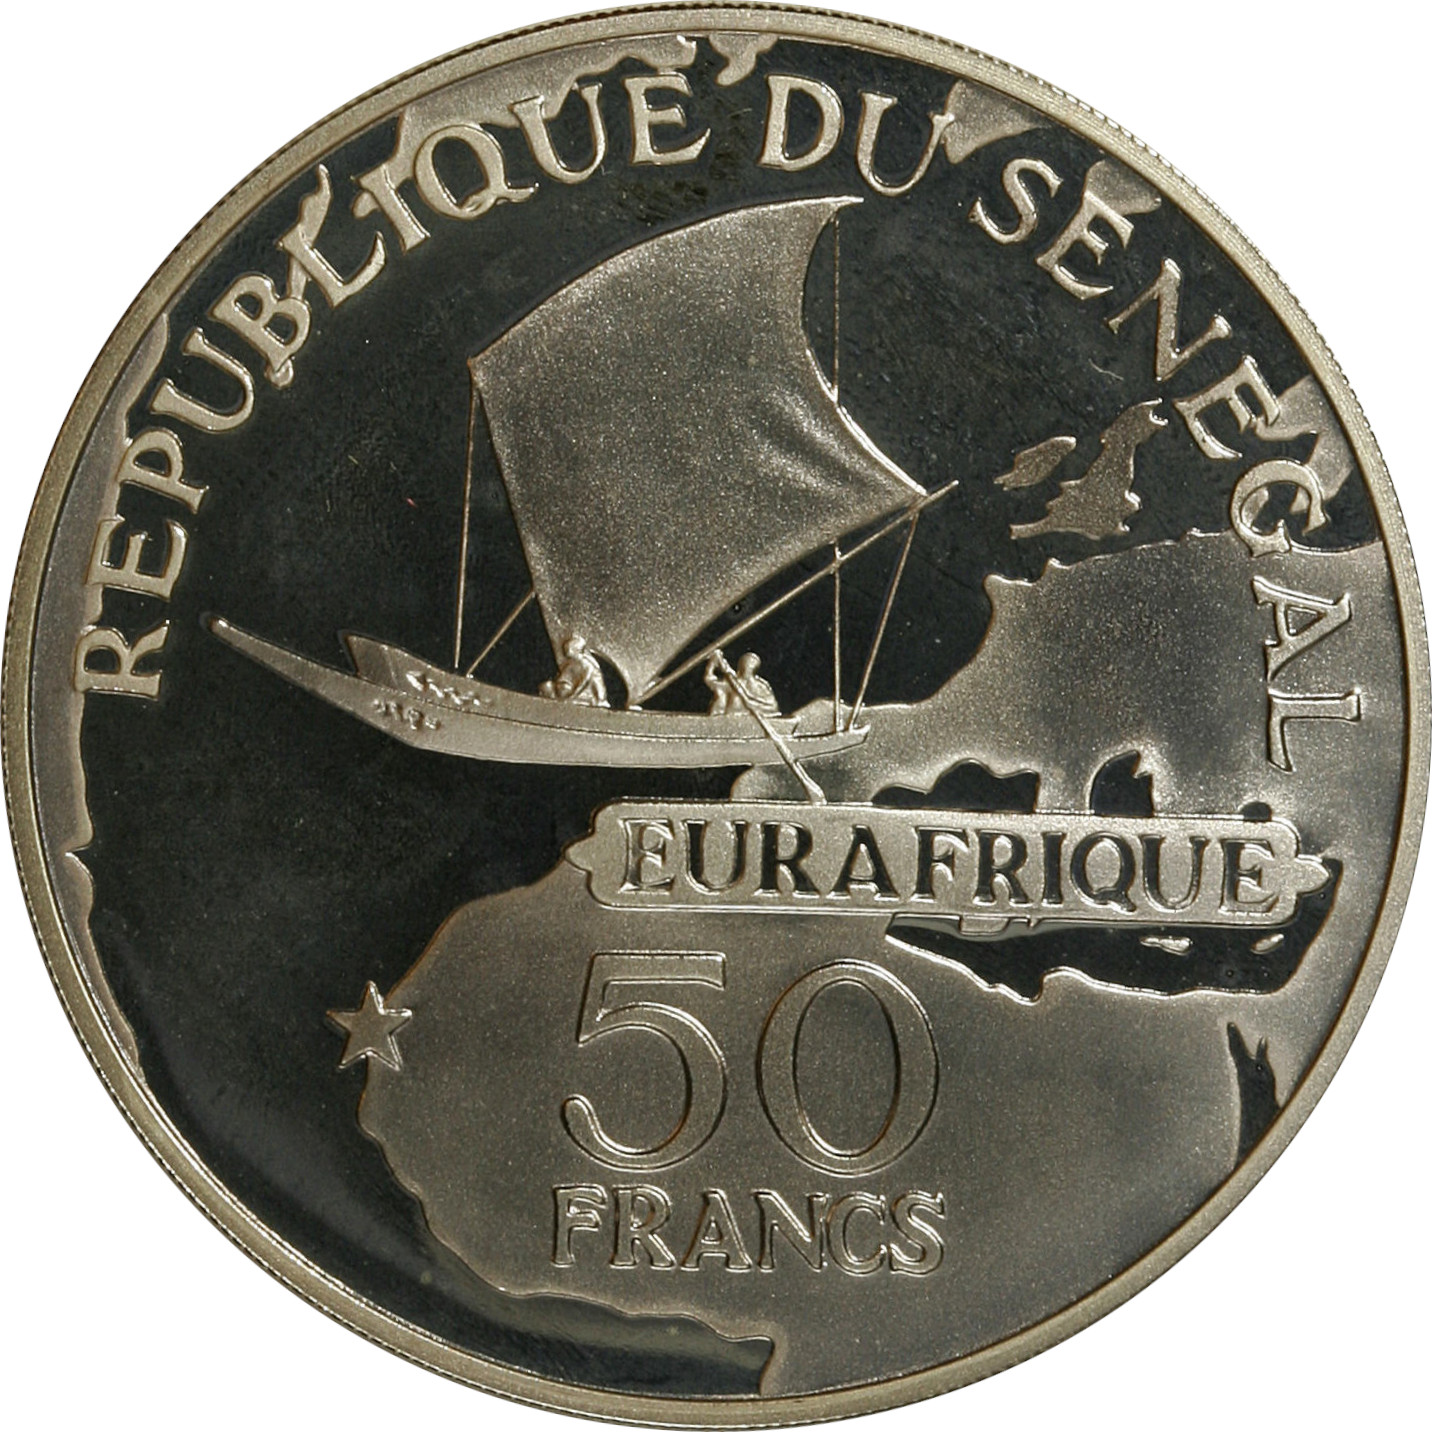 50 francs - Eurafrique - 25 years